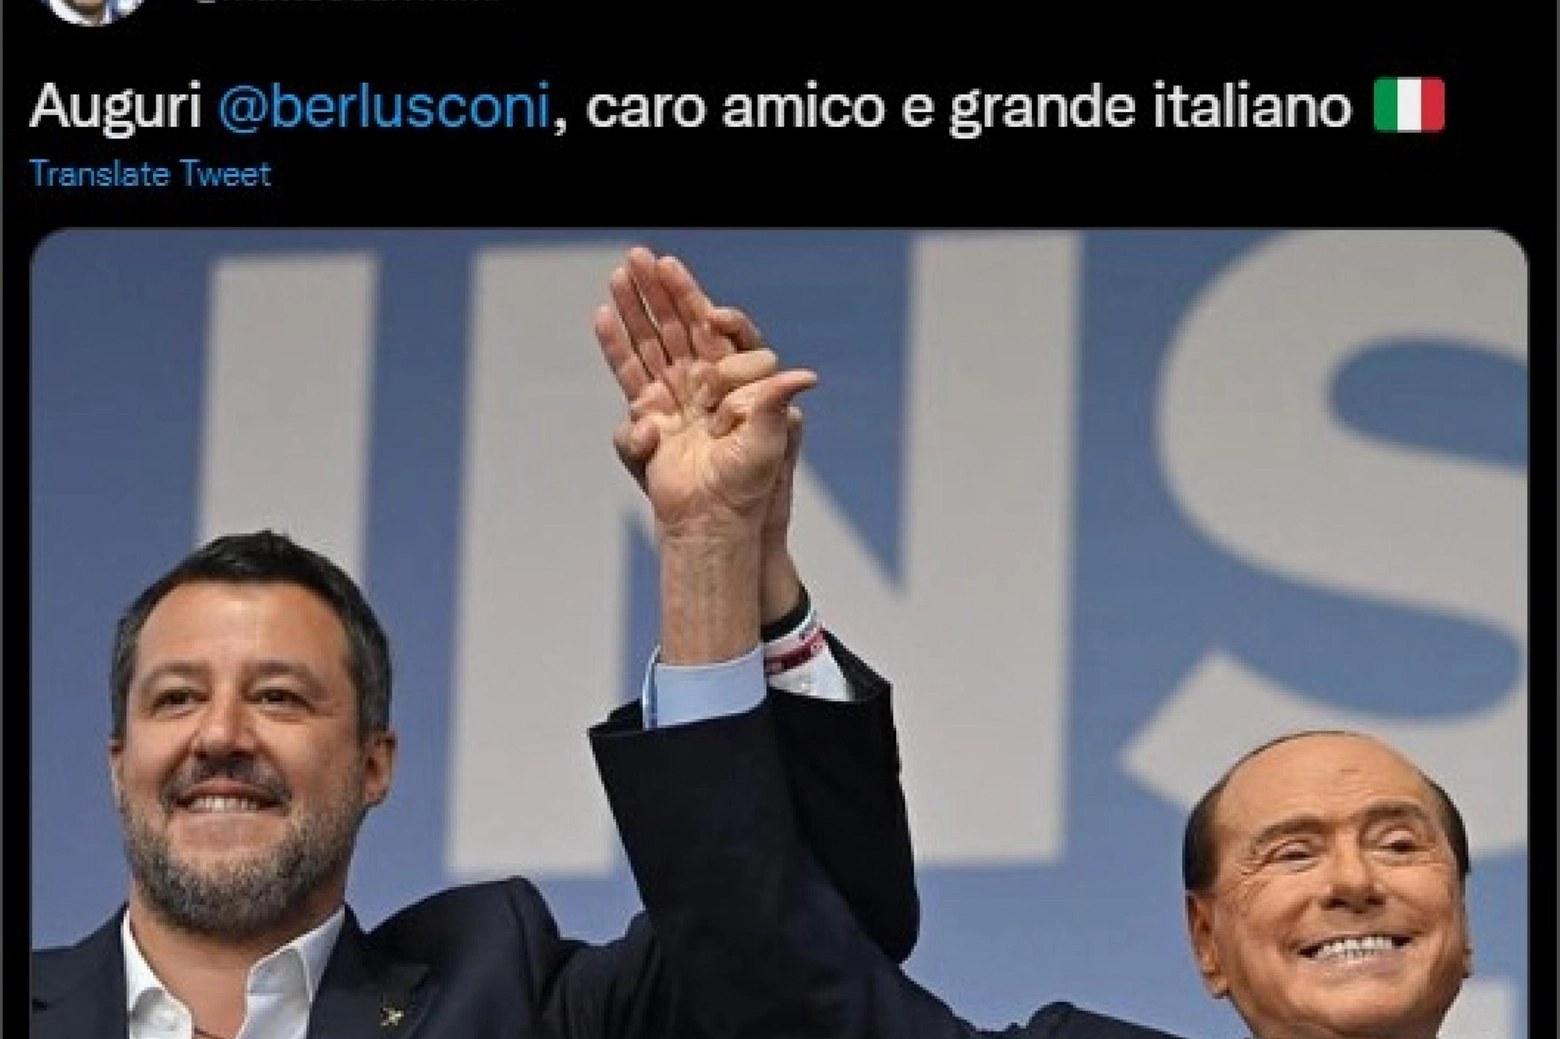 ''Auguri Berlusconi caro amico e grande italiano''. Lo scrive su Twitter il leader della L